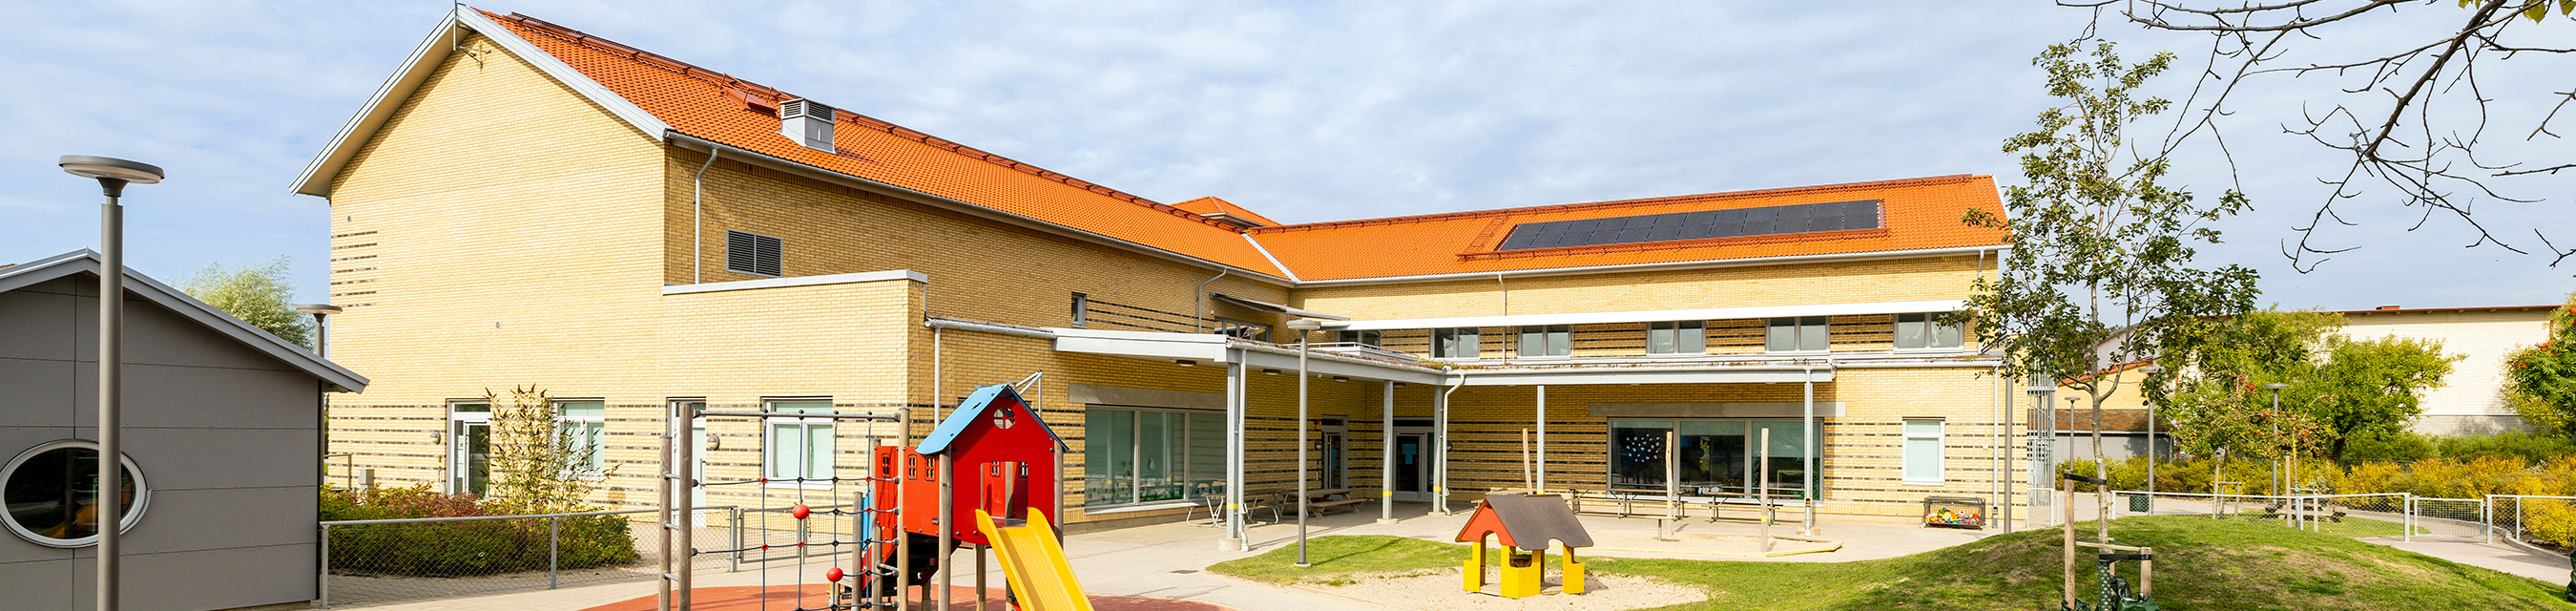 Pärlugglans förskola är byggd i två plan och har fyra avdelningar. 